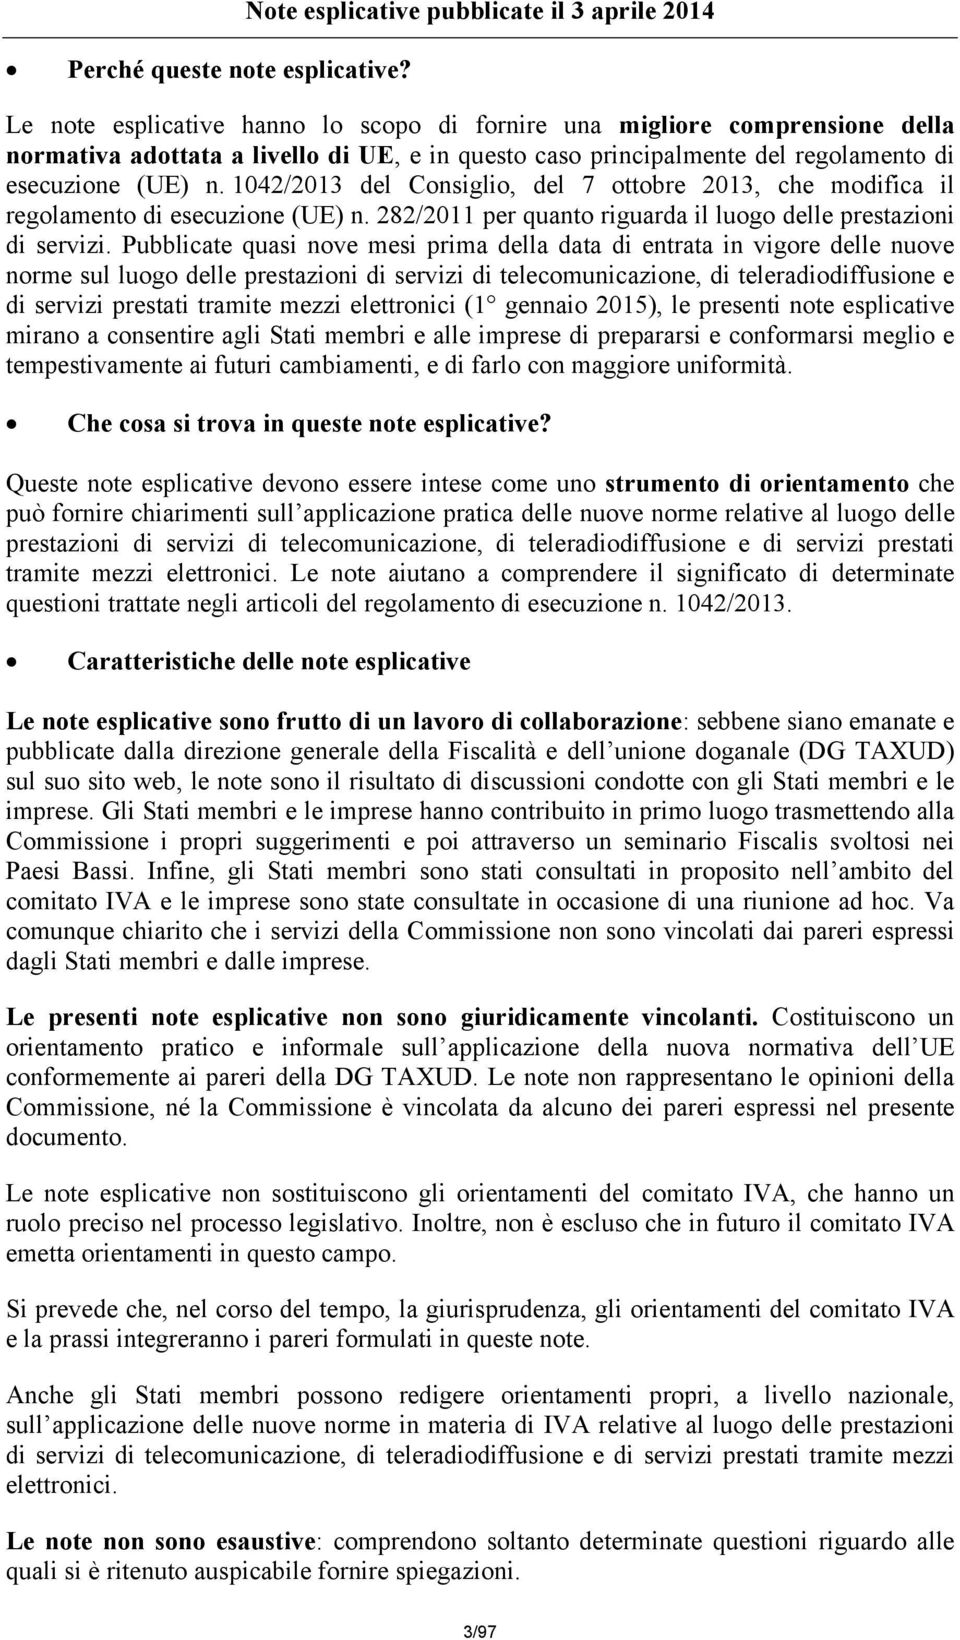 regolamento di esecuzione (UE) n. 1042/2013 del Consiglio, del 7 ottobre 2013, che modifica il regolamento di esecuzione (UE) n. 282/2011 per quanto riguarda il luogo delle prestazioni di servizi.